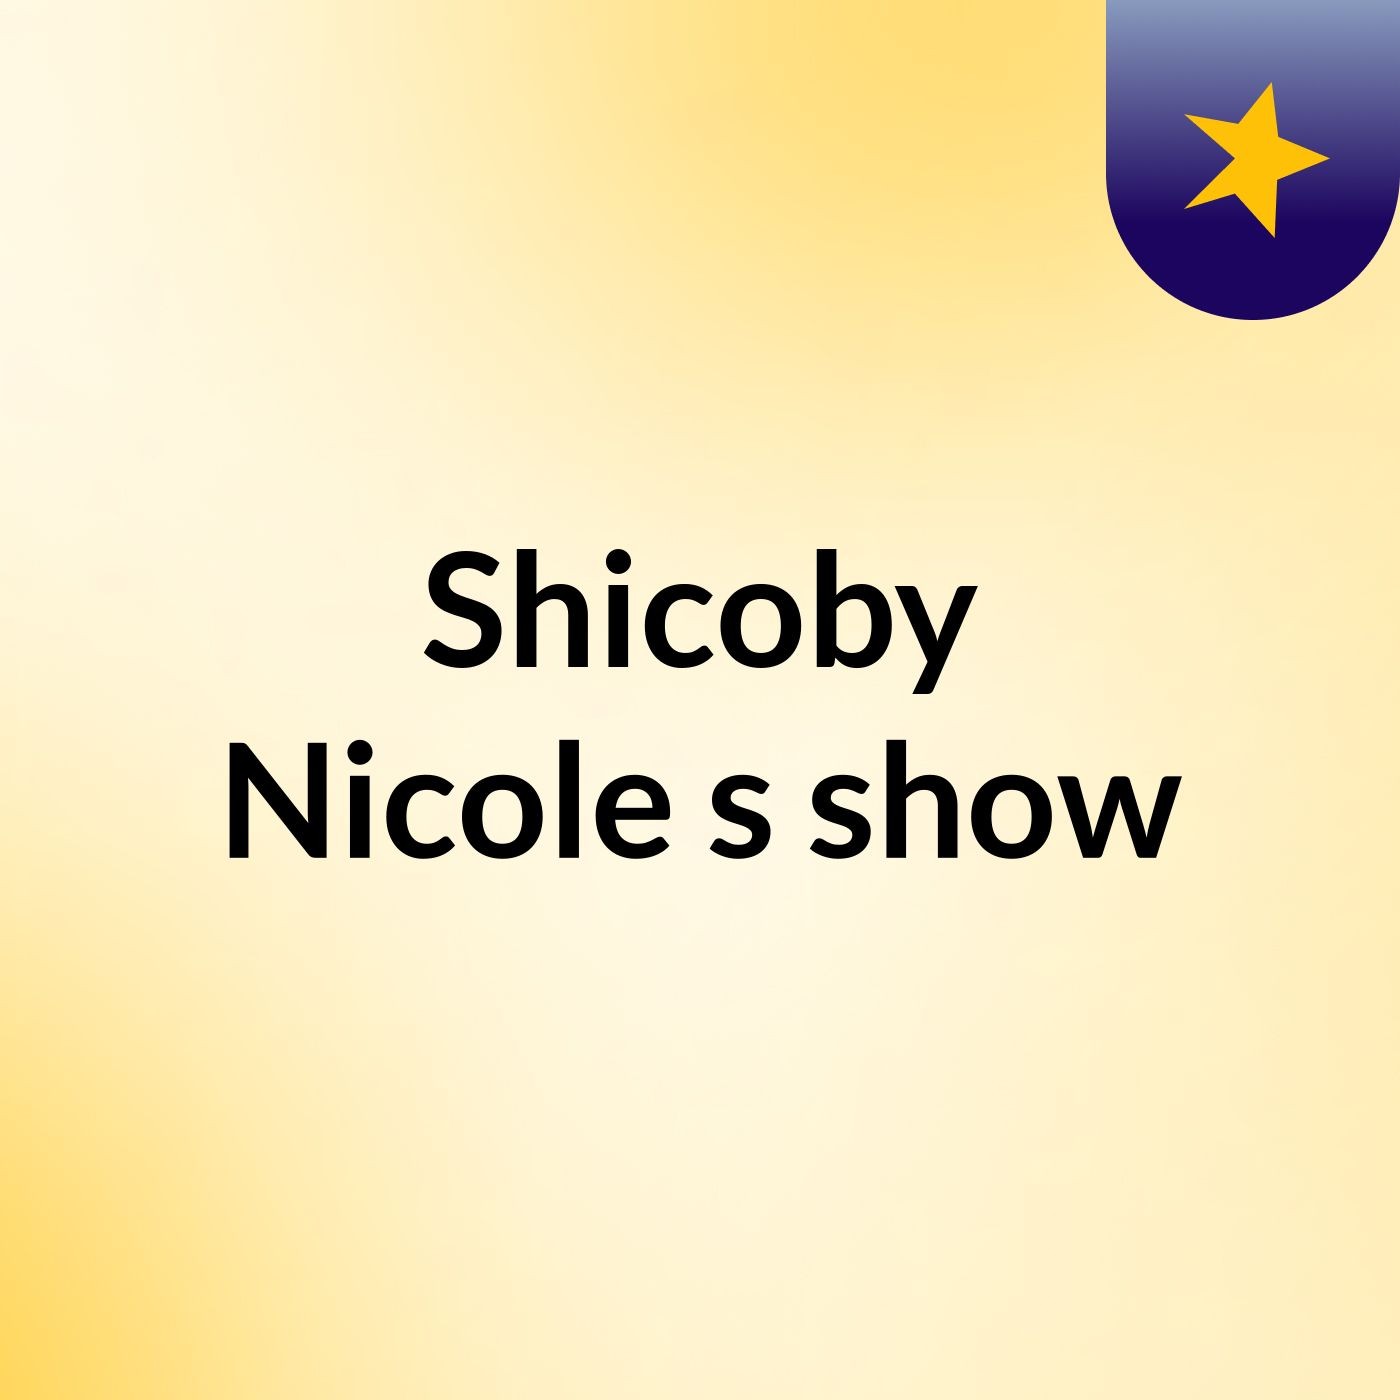 Shicoby Nicole's show